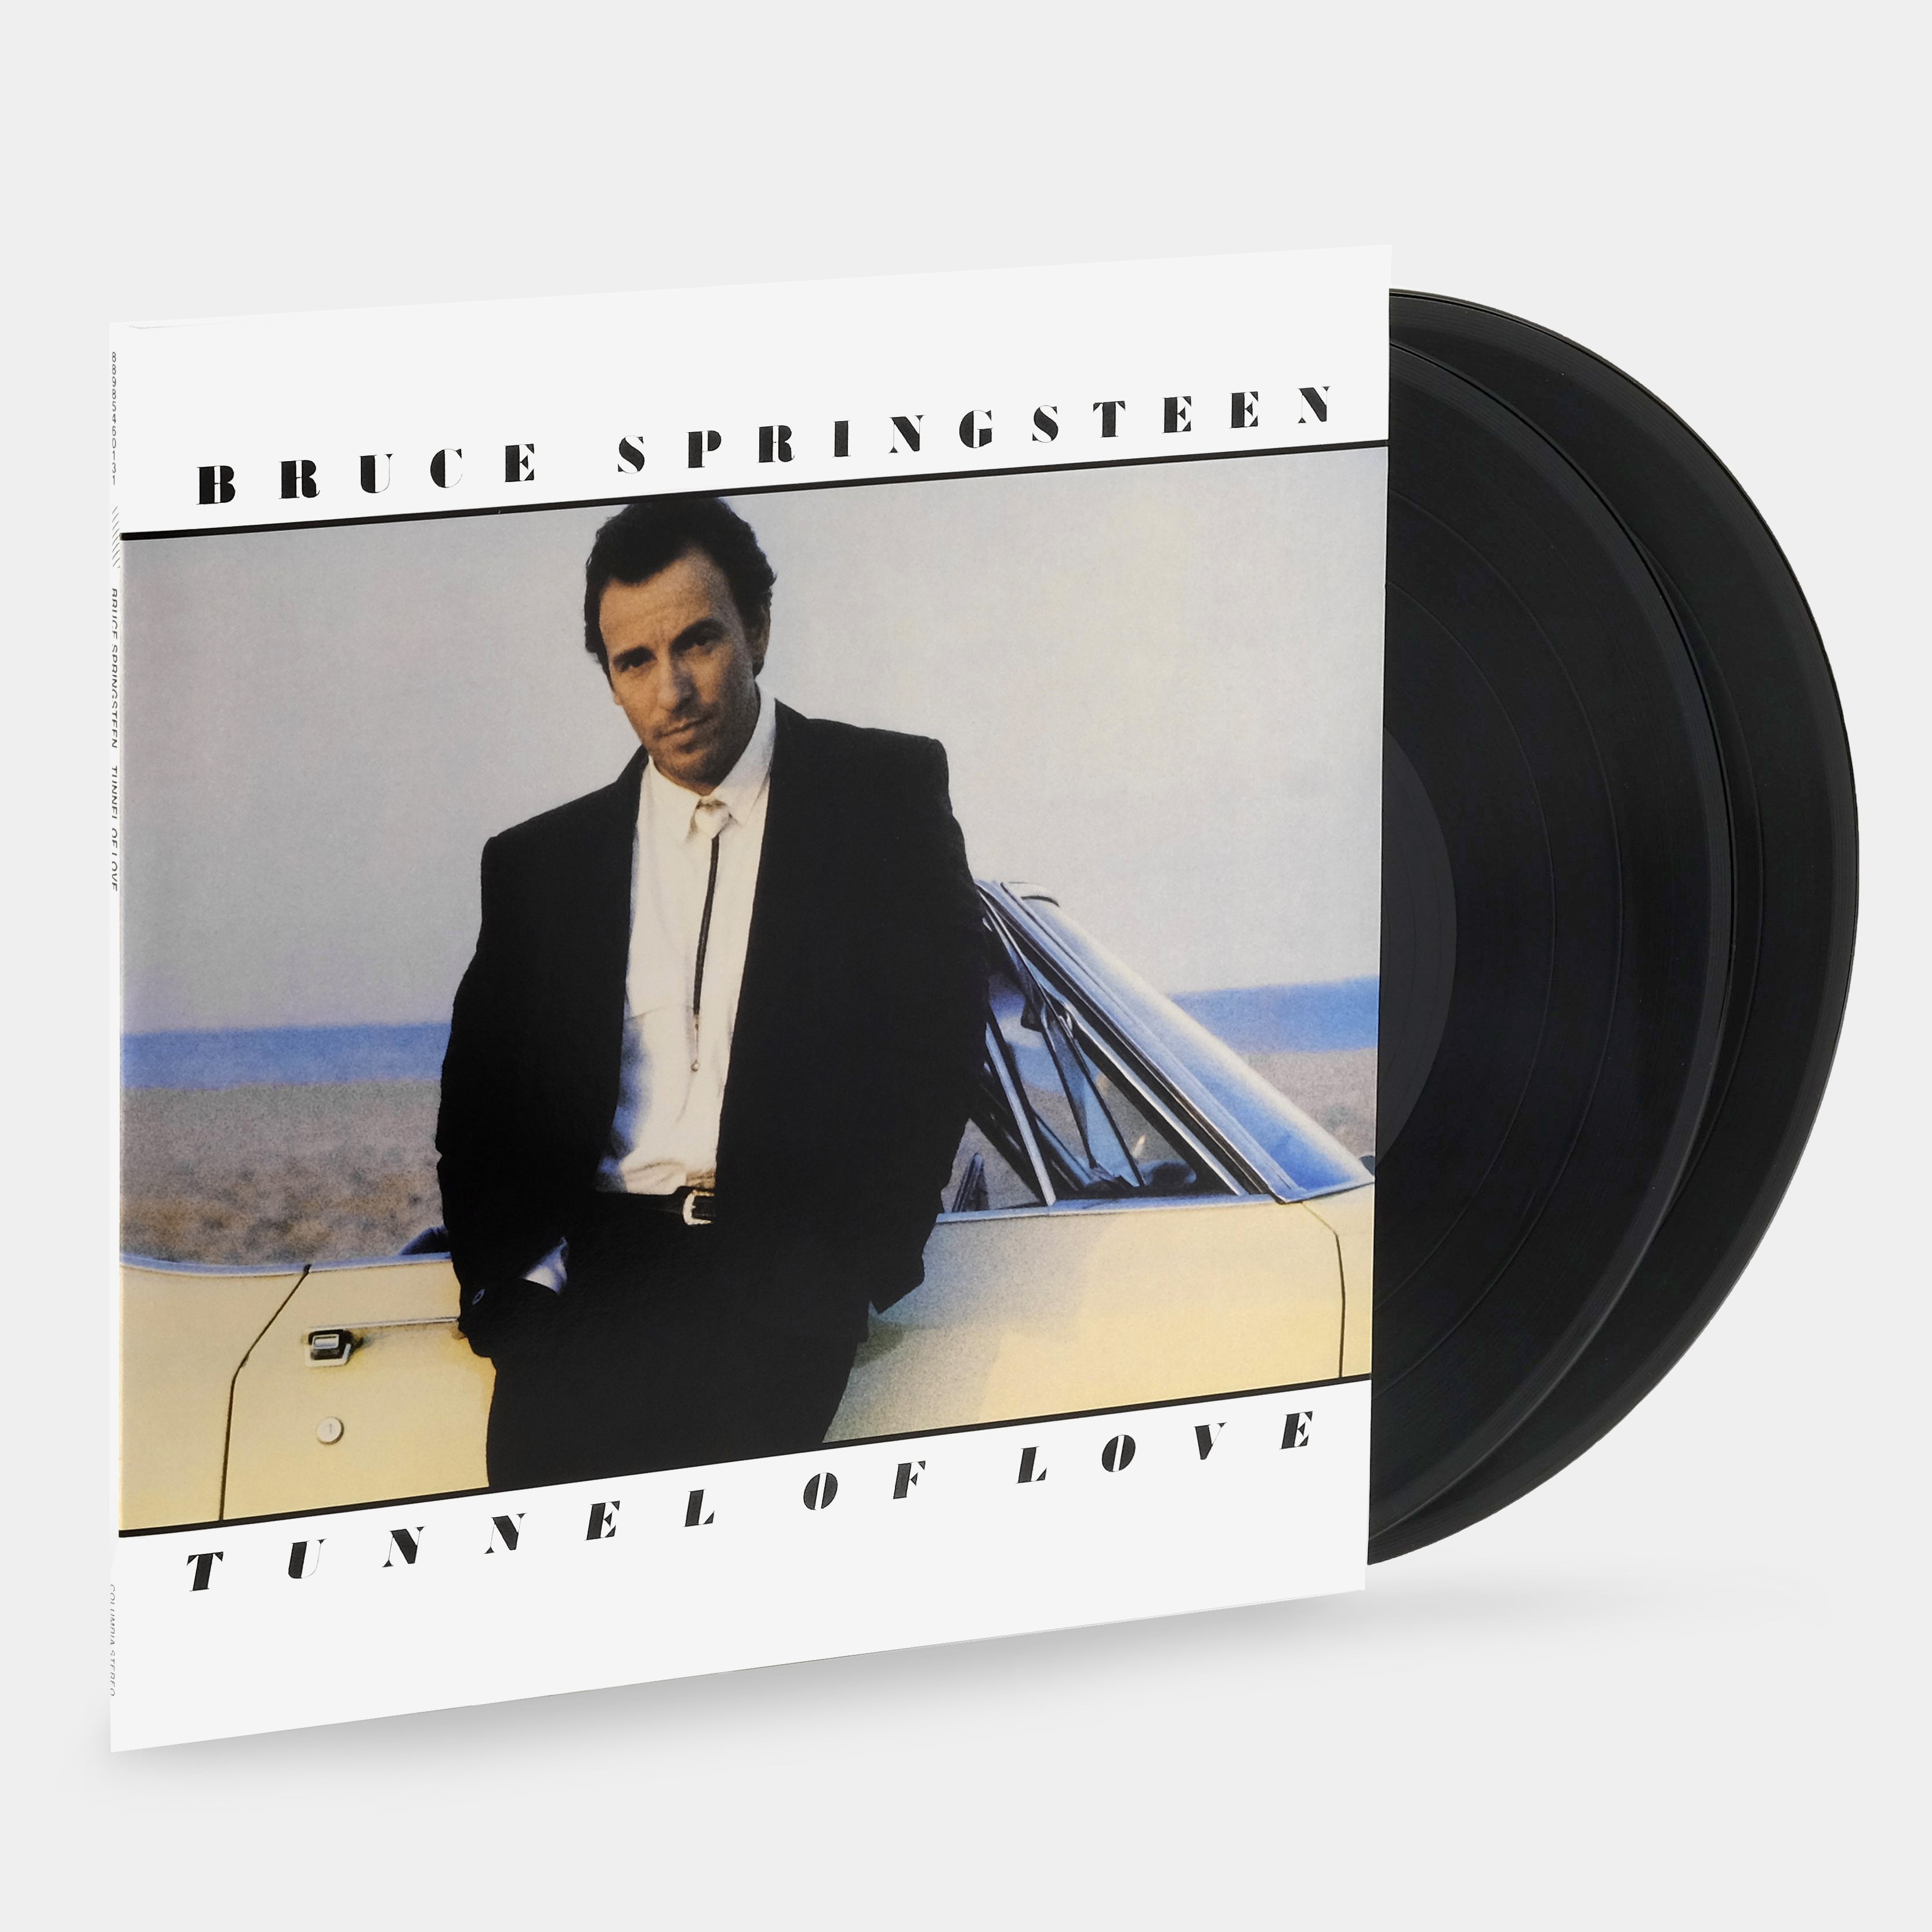 Bruce Springsteen - Tunnel of Love 2xLP Vinyl Record